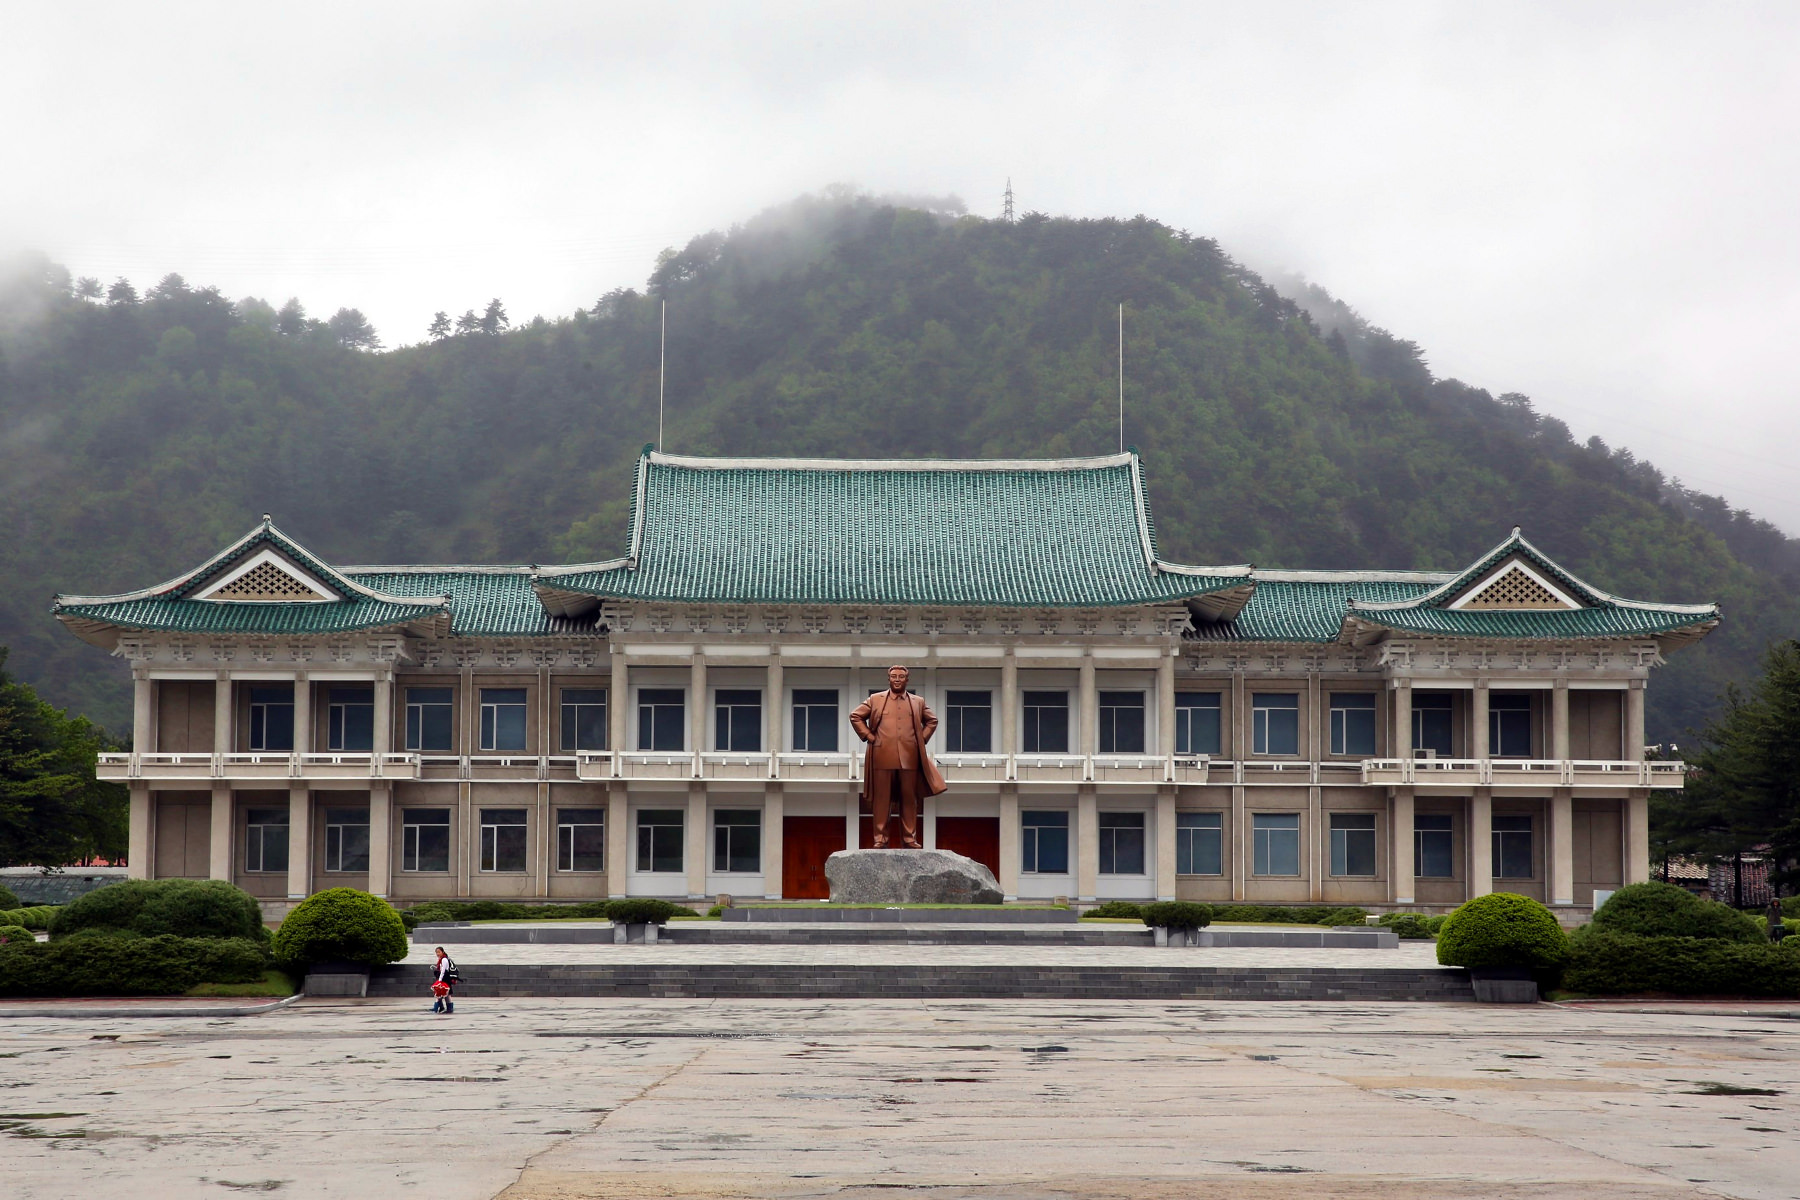 La statue de bronze du président Kim Il Sung dans le comté de Hyangsan, Mont Myohyang, Corée du Nord (RPDC). Voyage organisé par KTG Tours